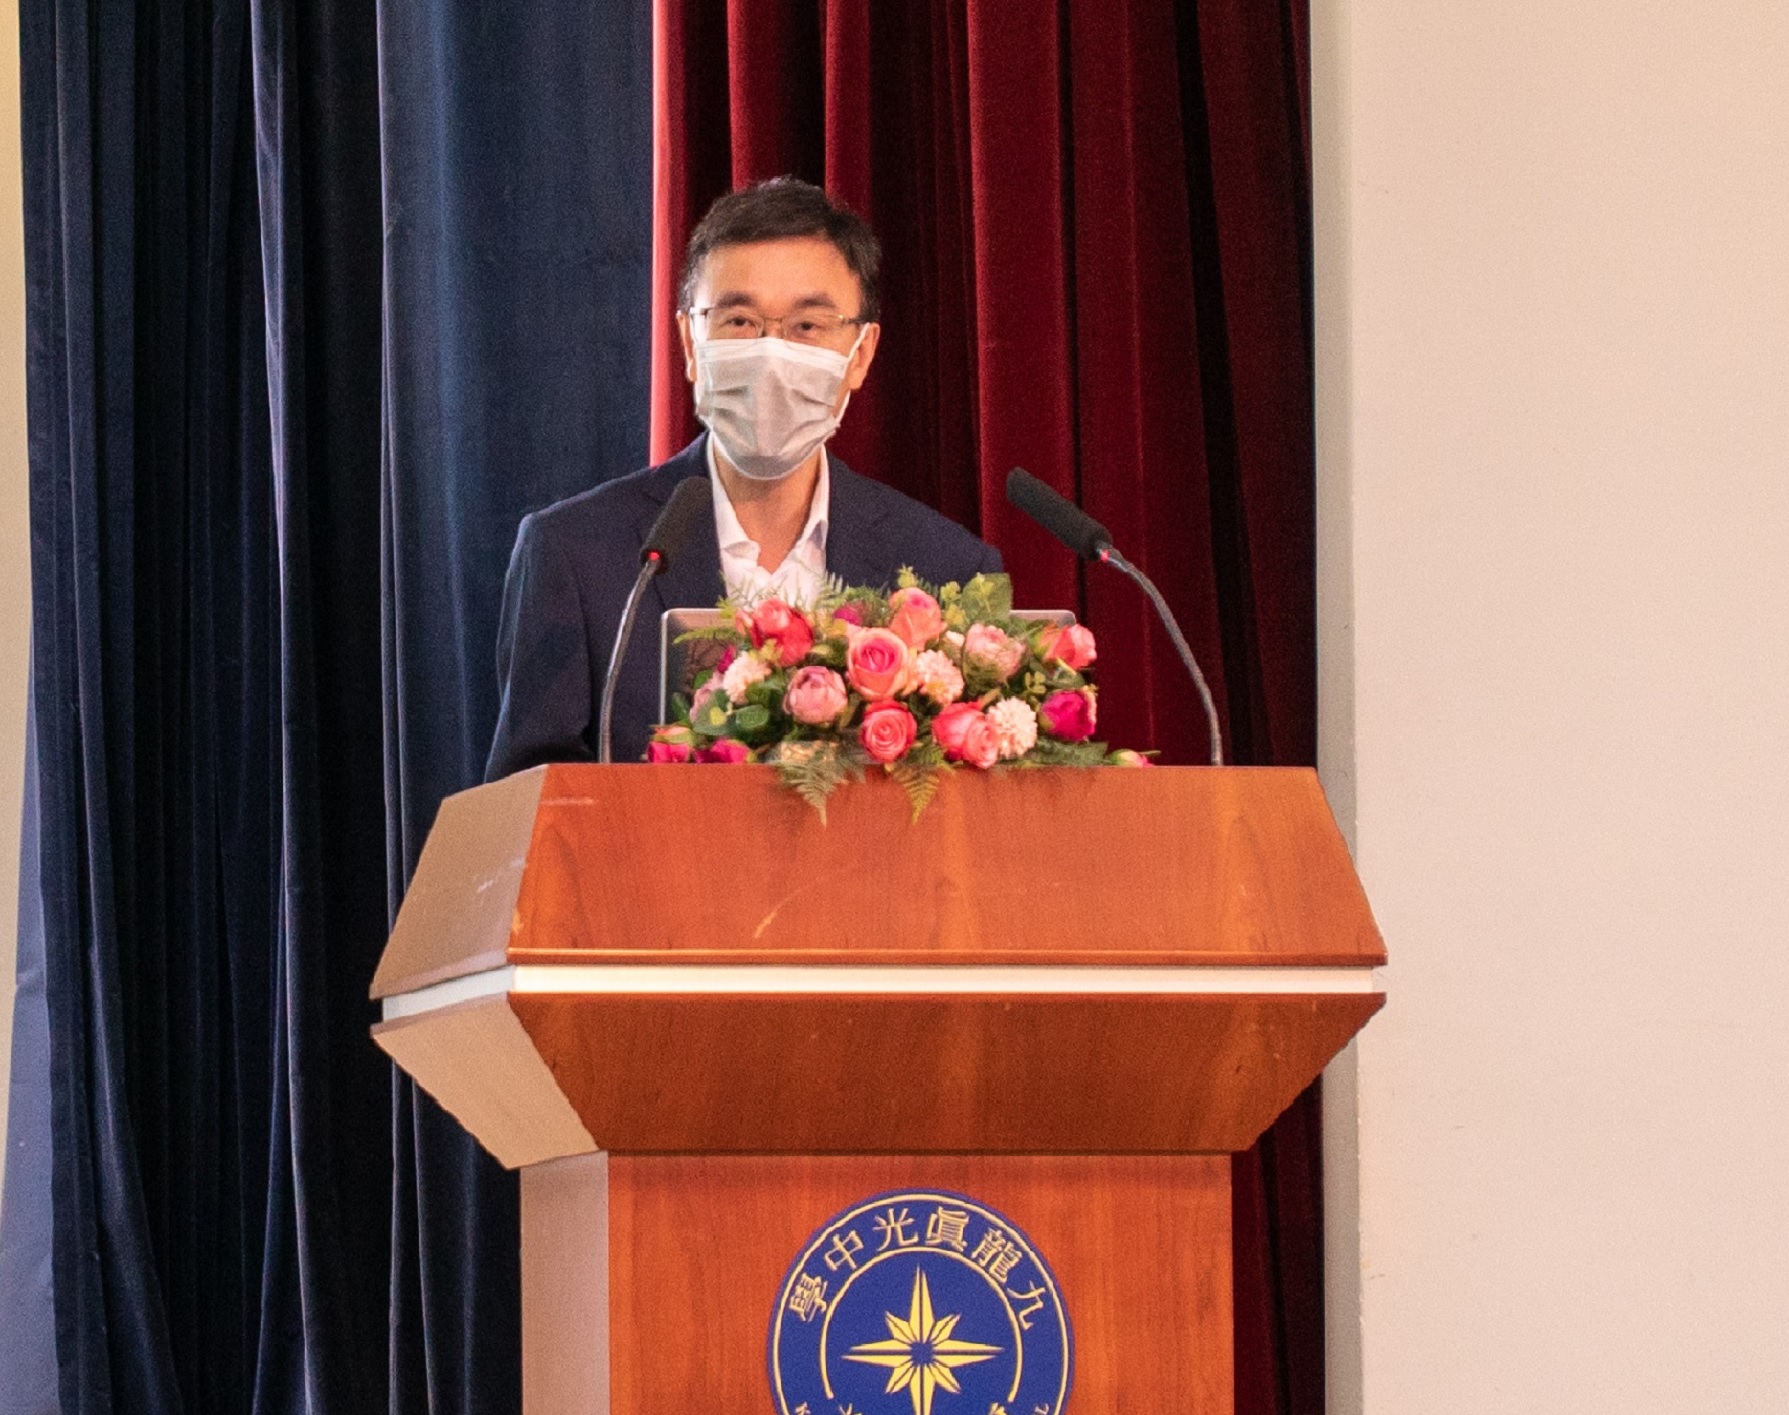 政府資訊科技總監辦公室高級系統經理孫宇萬先生於「香港津貼中學議會周年大會」致辭